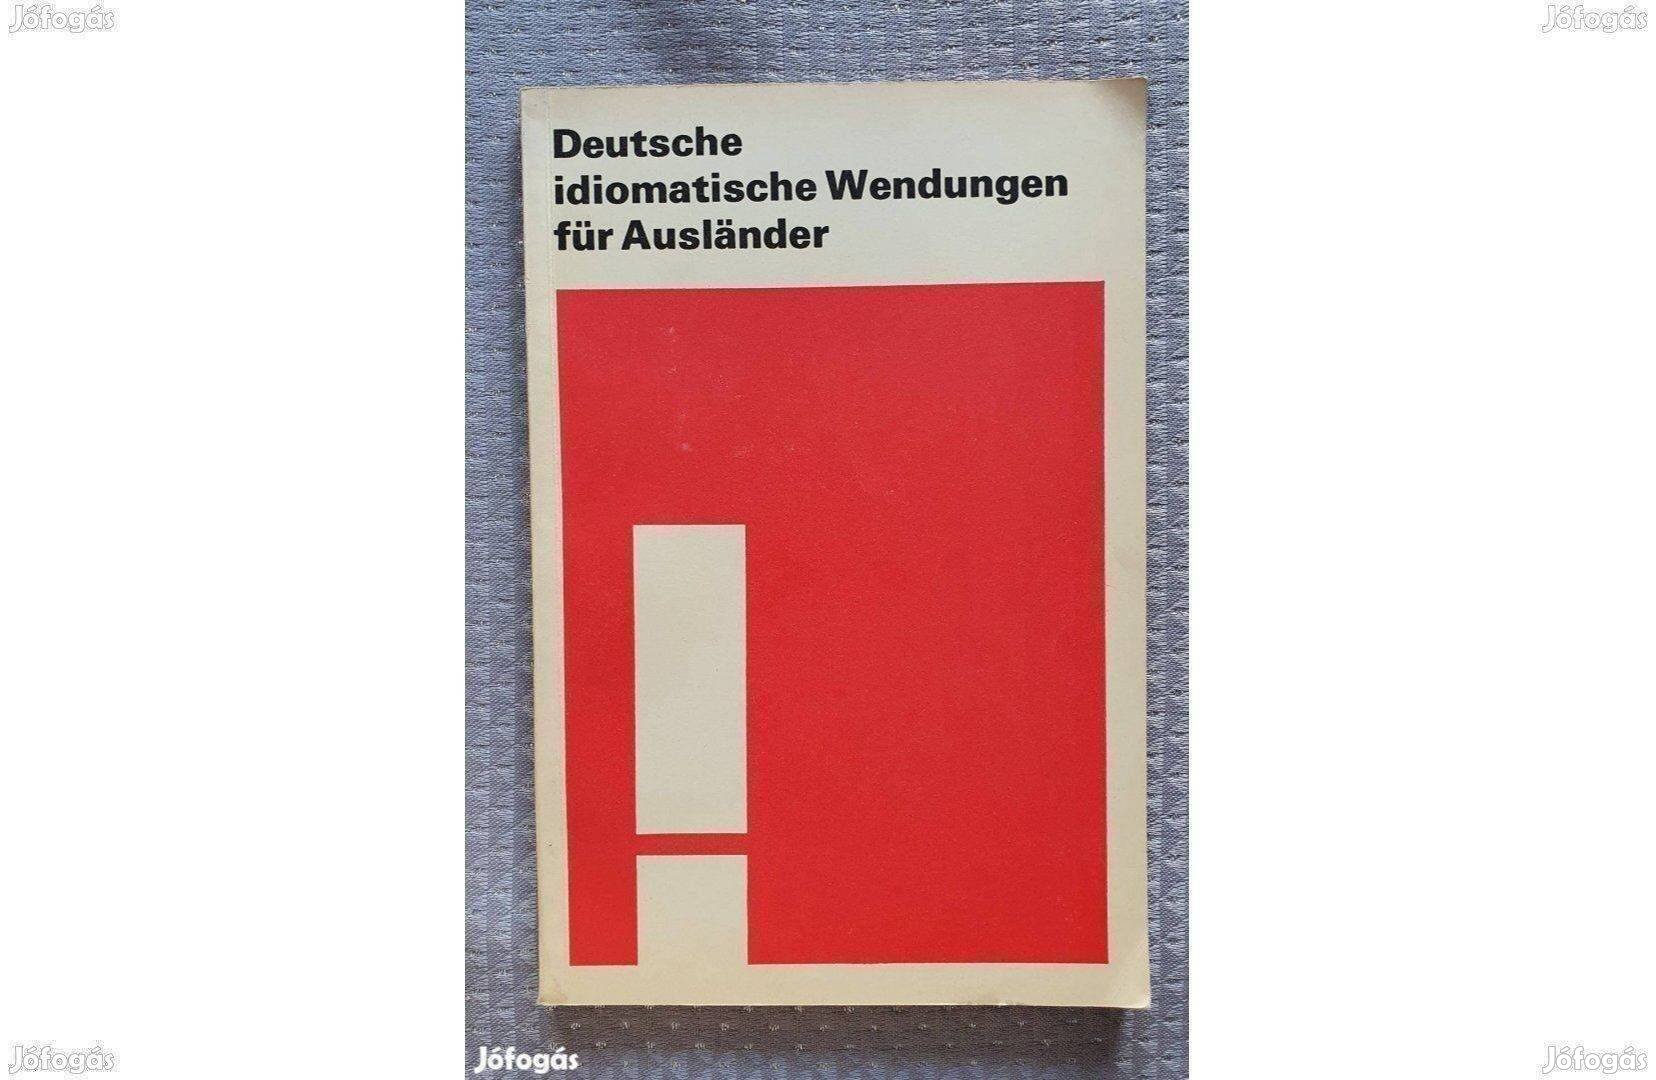 Deutsche idiomatische Wendungen für Auslander német nyelvű